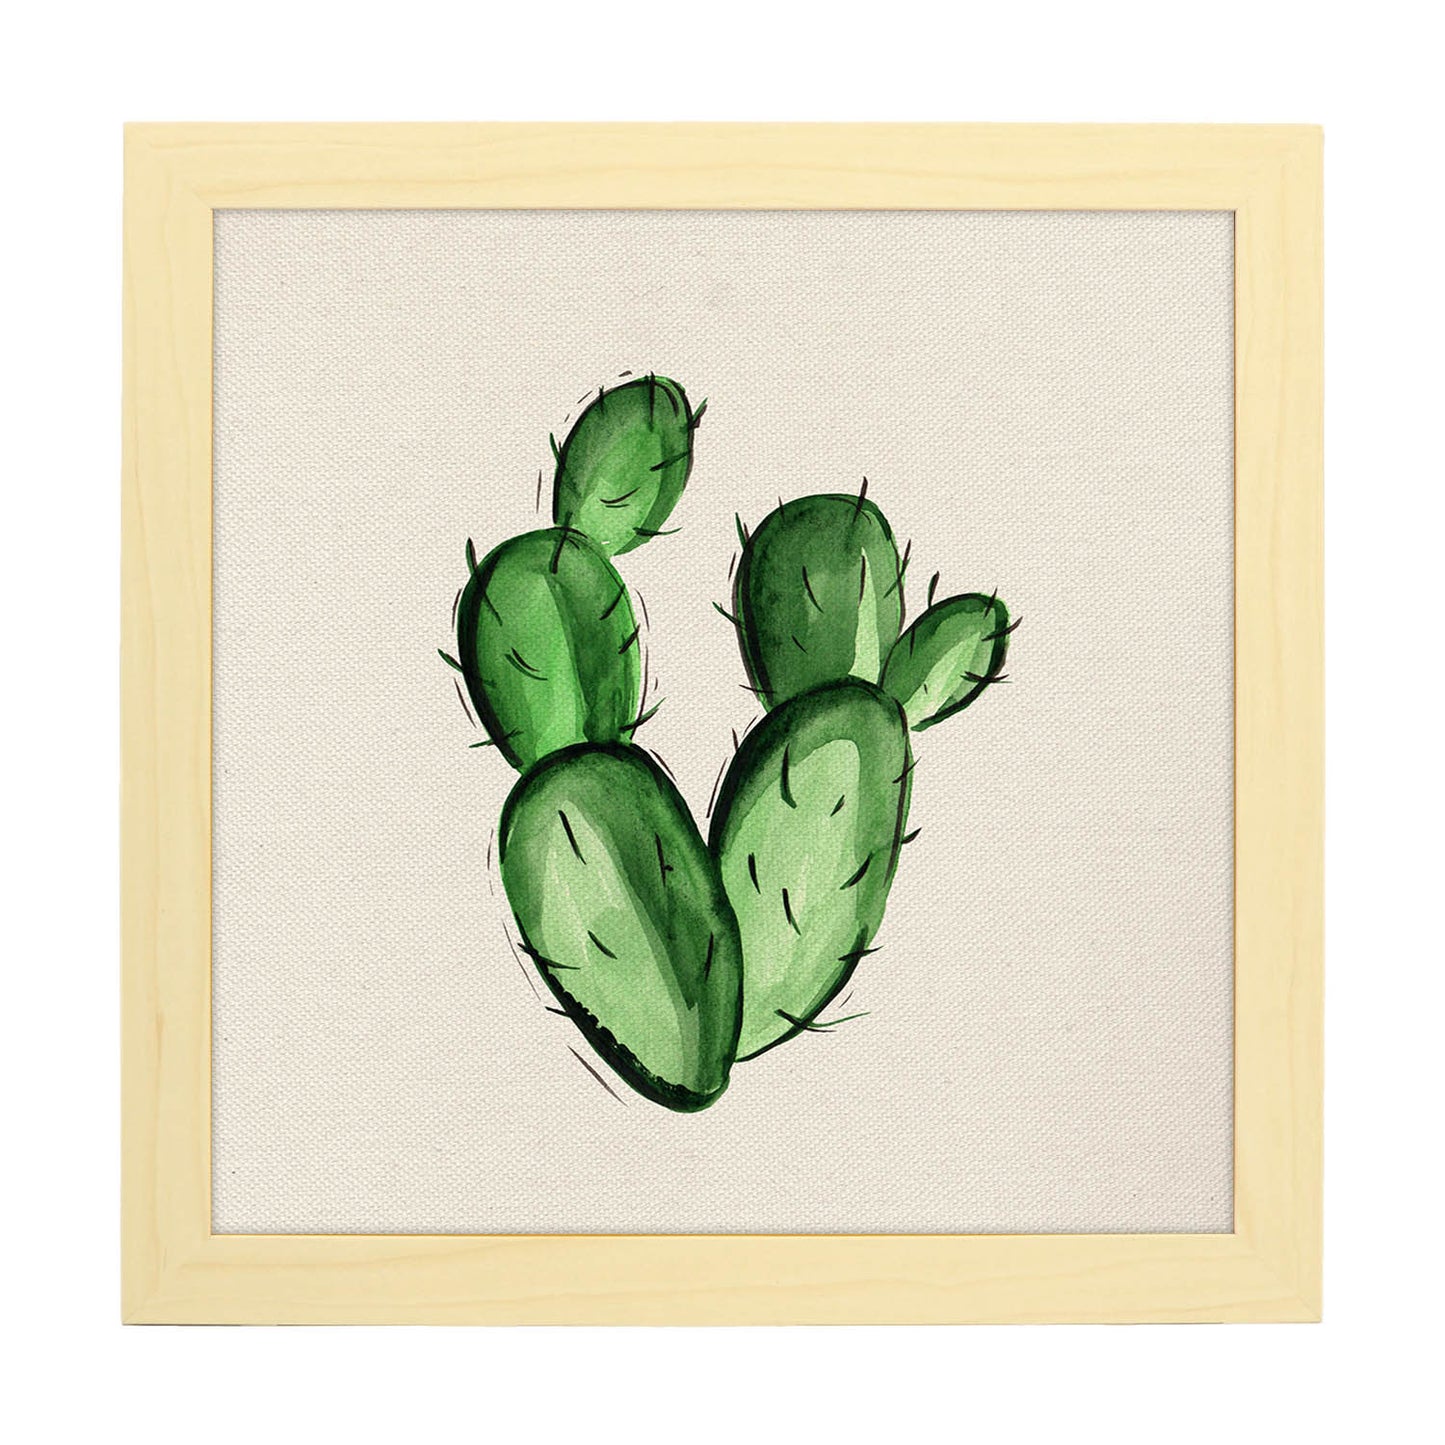 Poster de cactus dibujado. Lámina de Todo pasión-Artwork-Nacnic-20x20 cm-Marco Madera clara-Nacnic Estudio SL